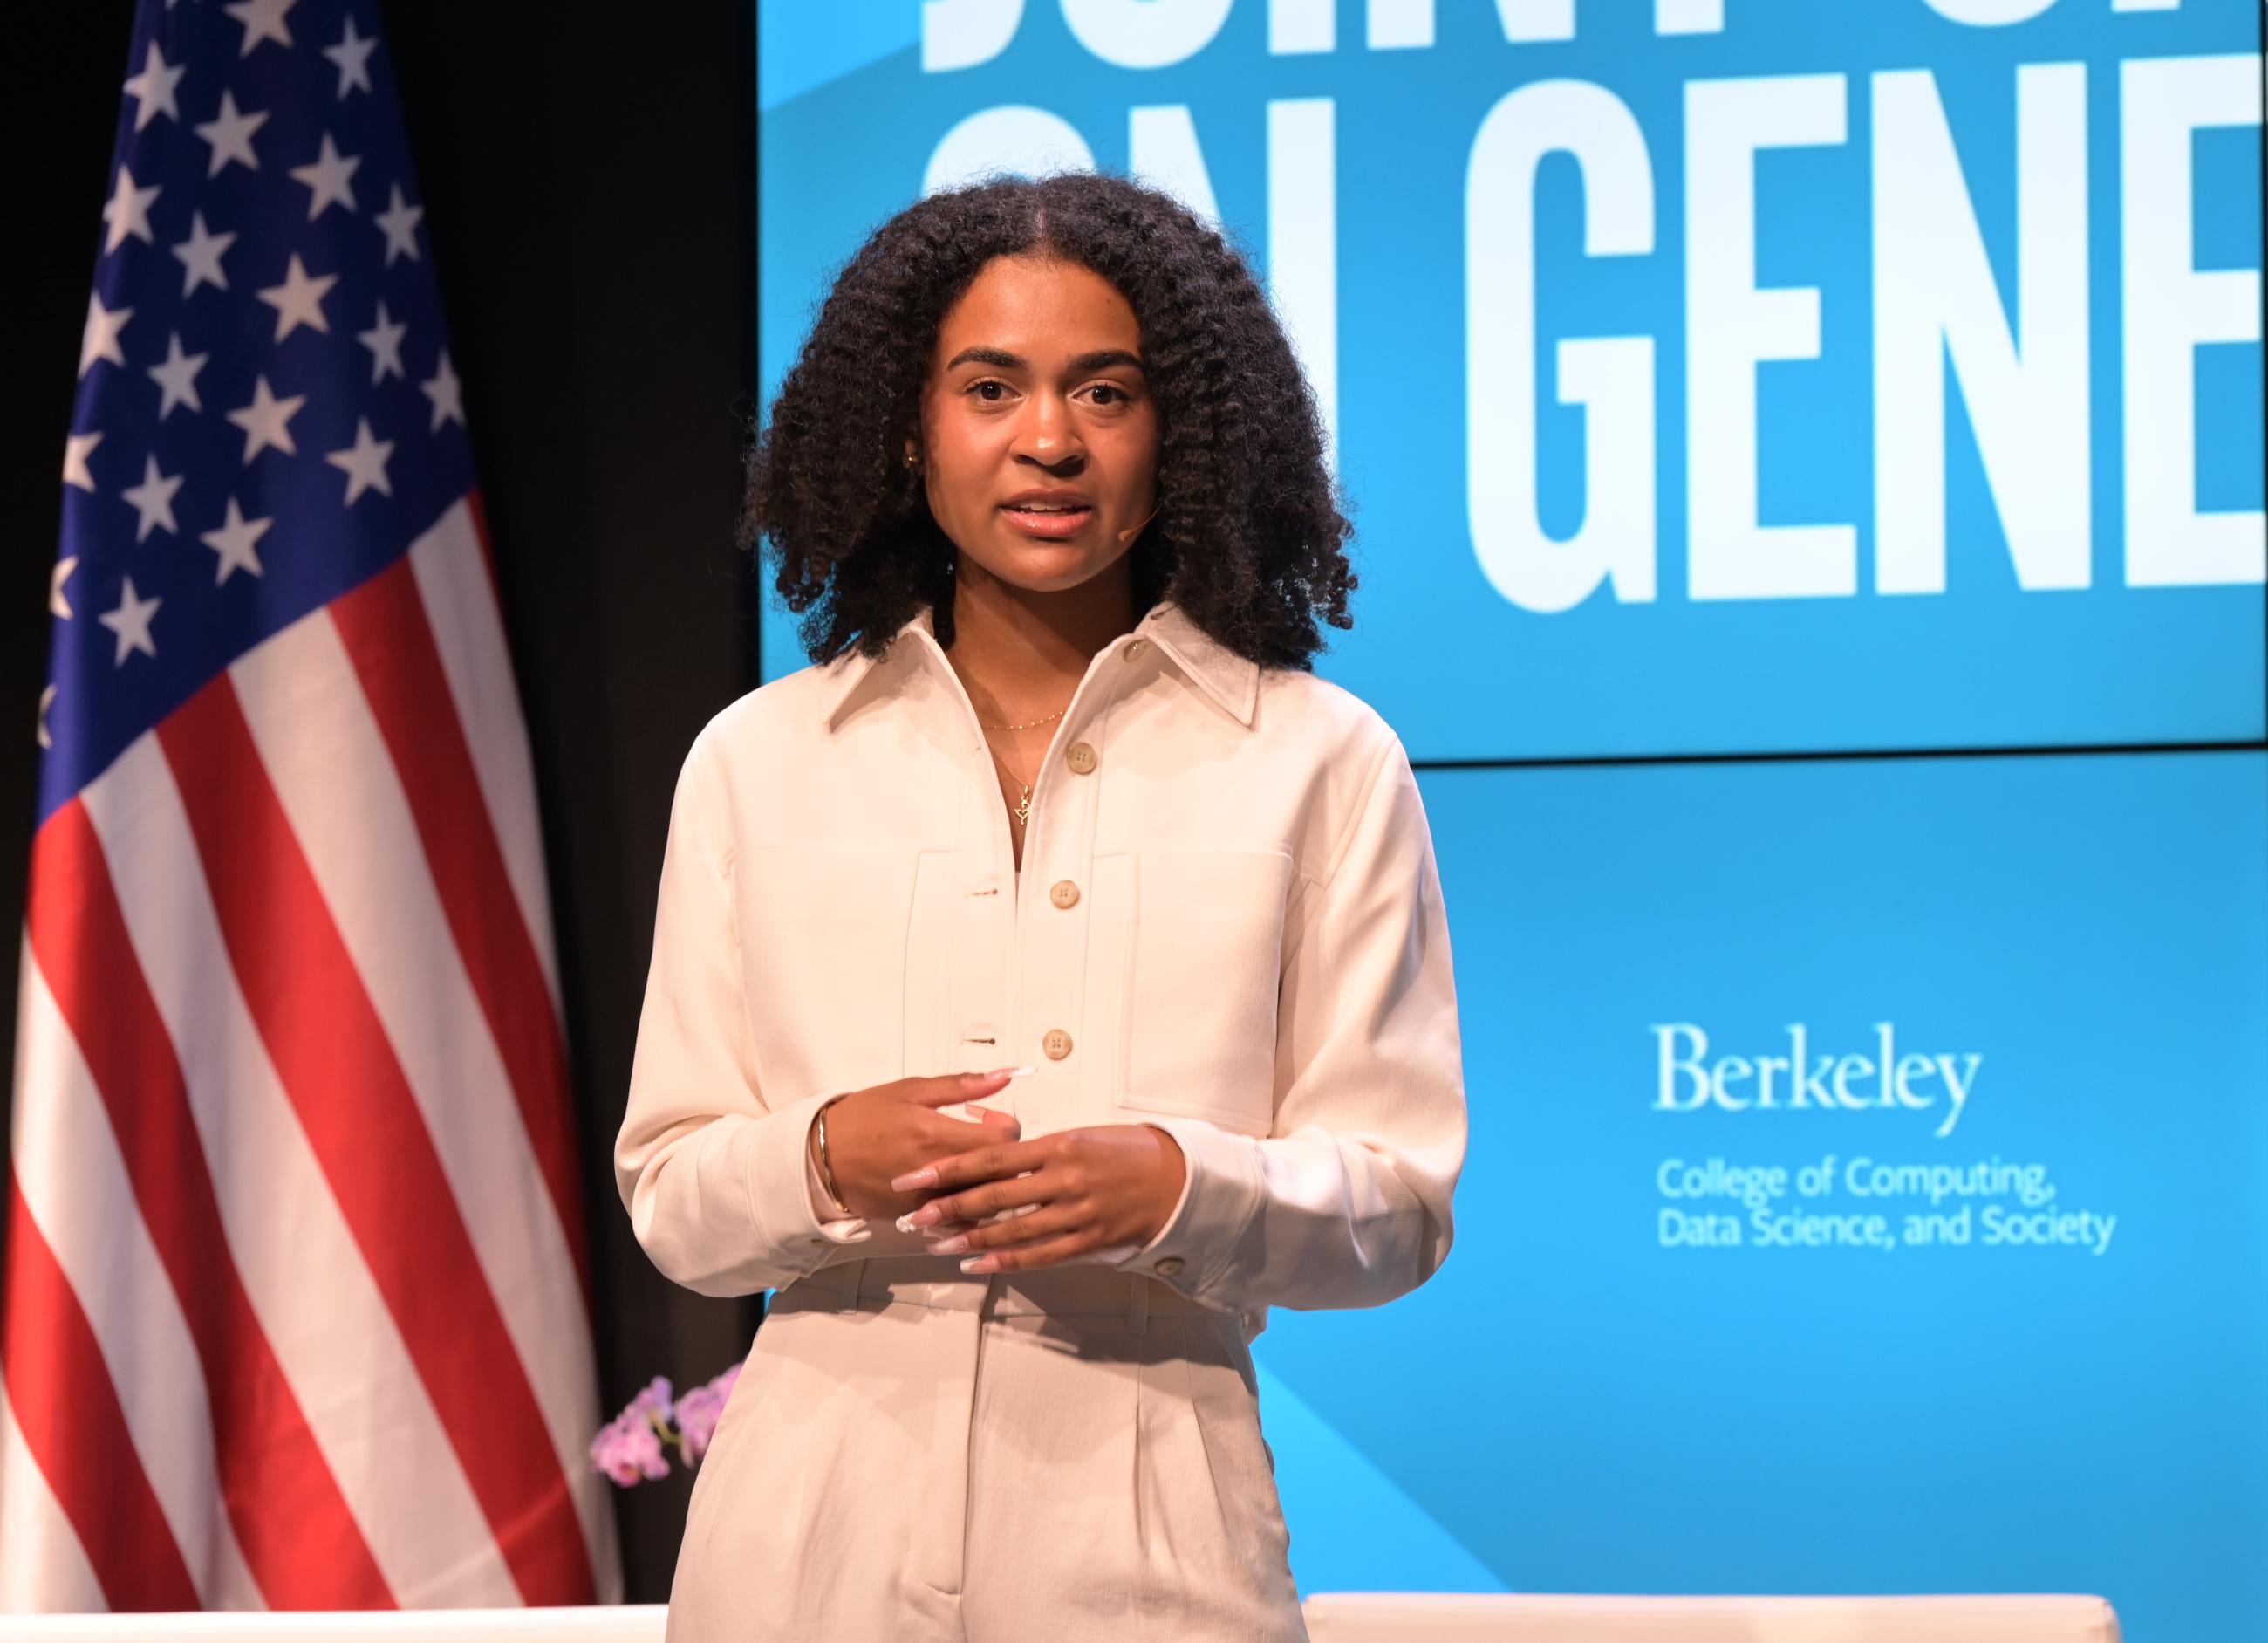 Bridget Agyare is an alumni of UC Berkeley.